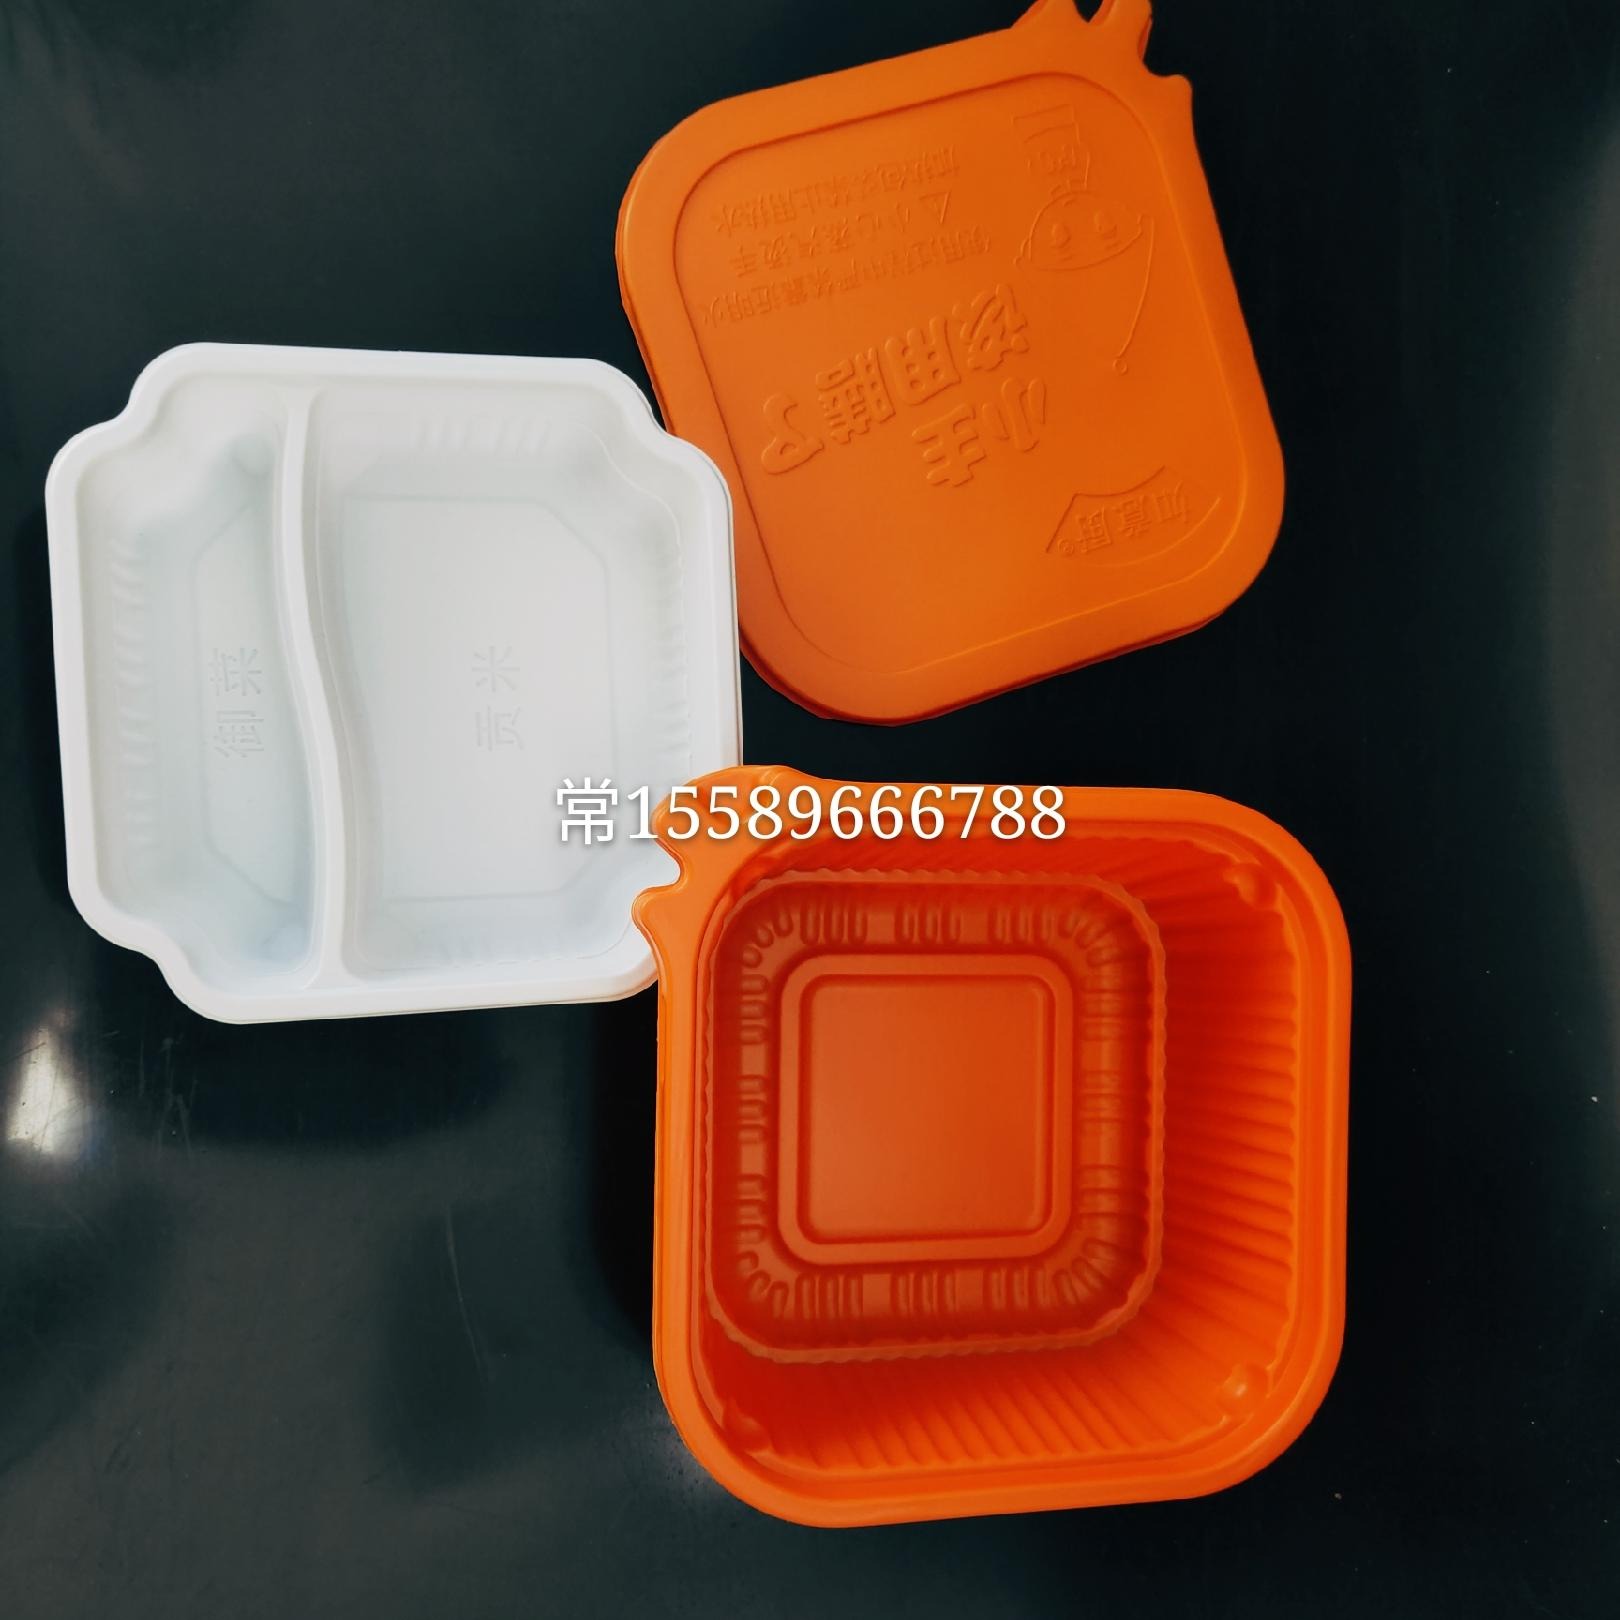 厂家直供自加热火锅塑料碗  方便菜自加热锅  可耐高温  PP材质WR00049图片